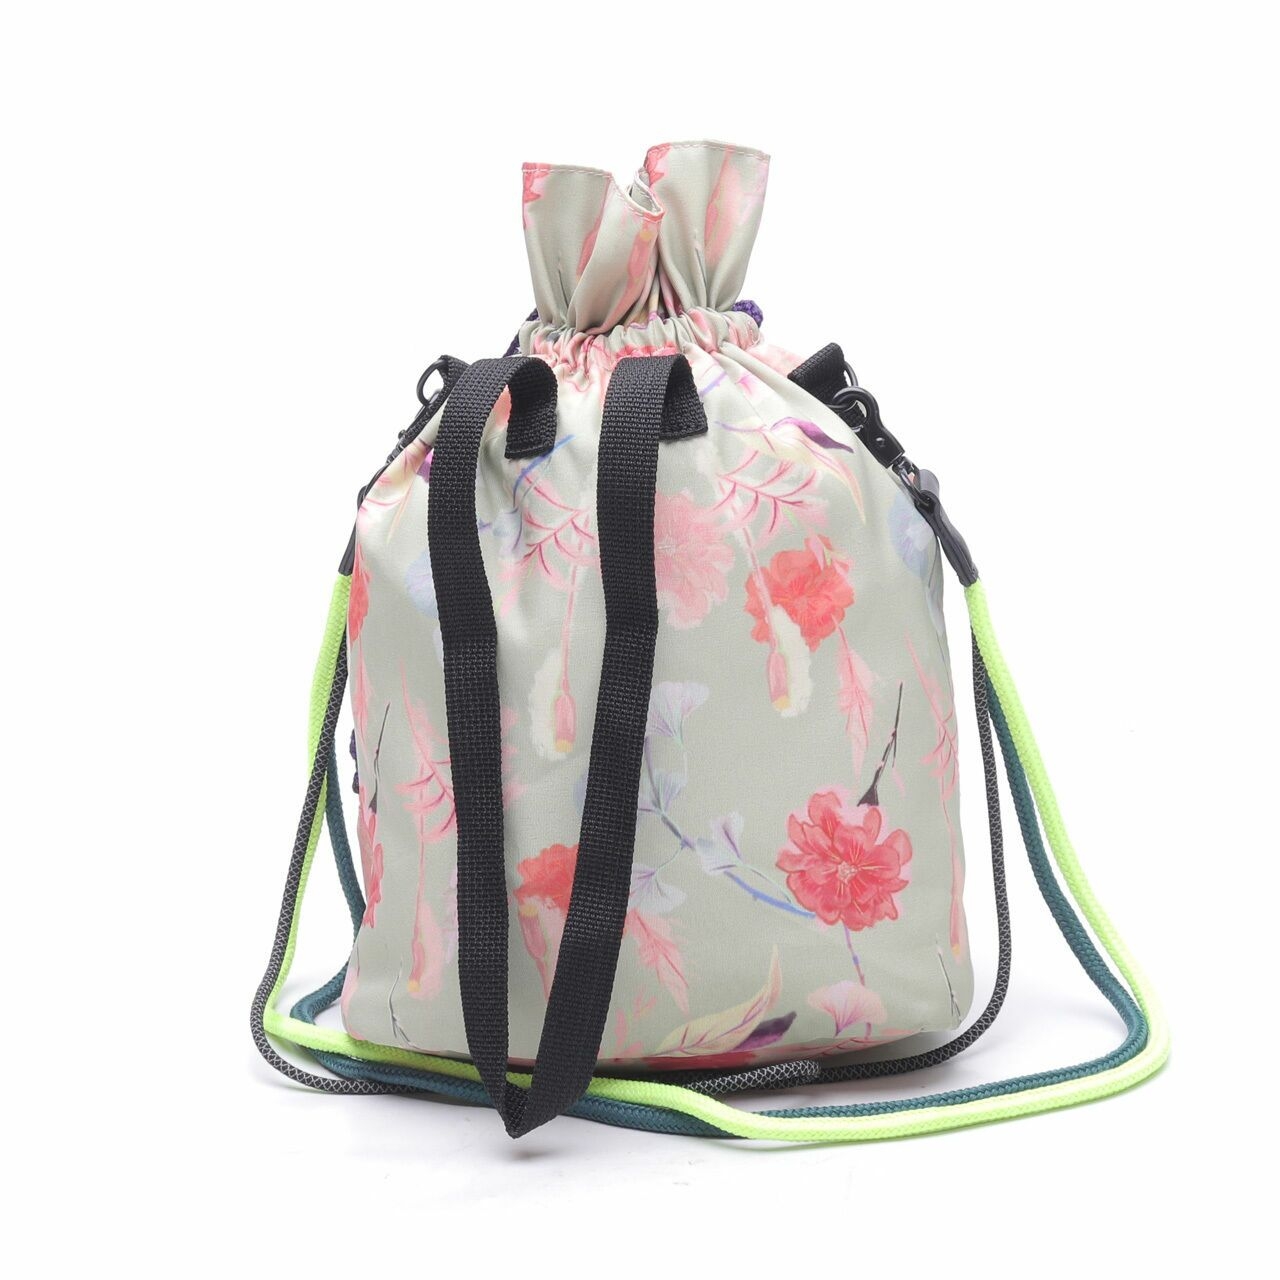 Massicot Multi Floral Plutto Bag  Sling Bag